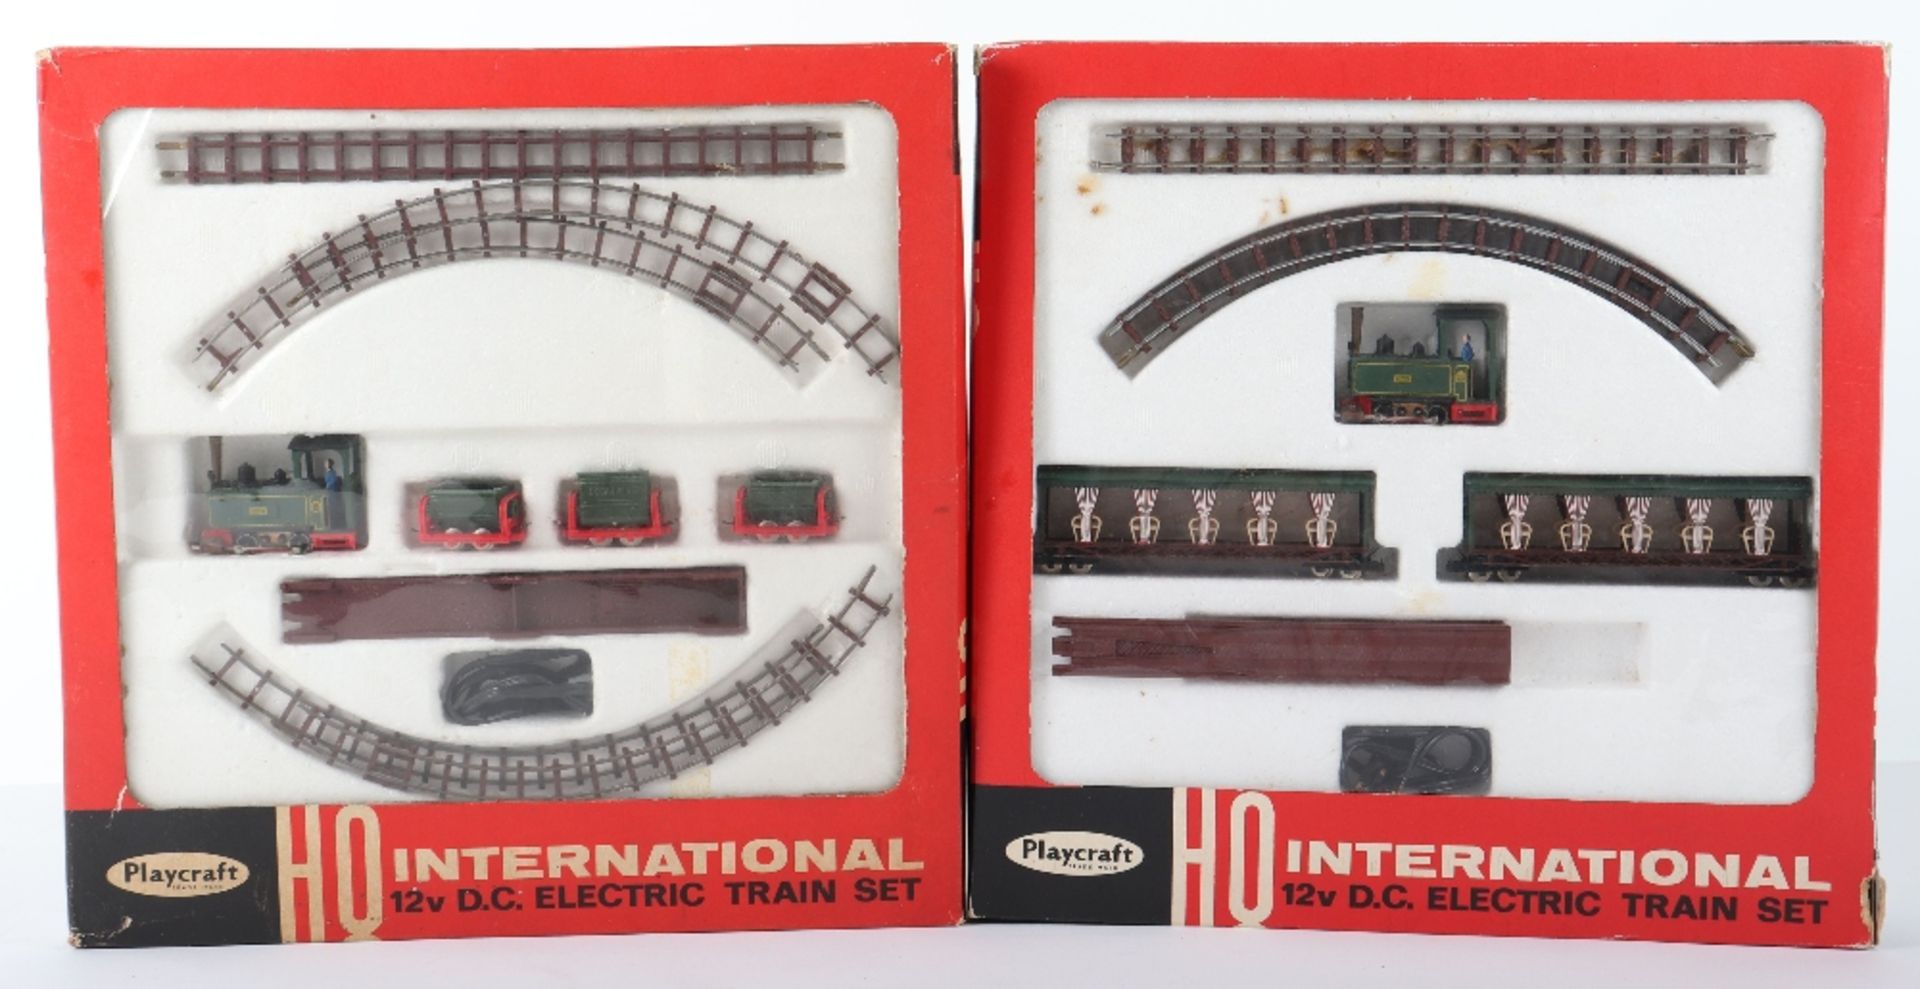 Playcraft HO Miniature narrow gauge train sets